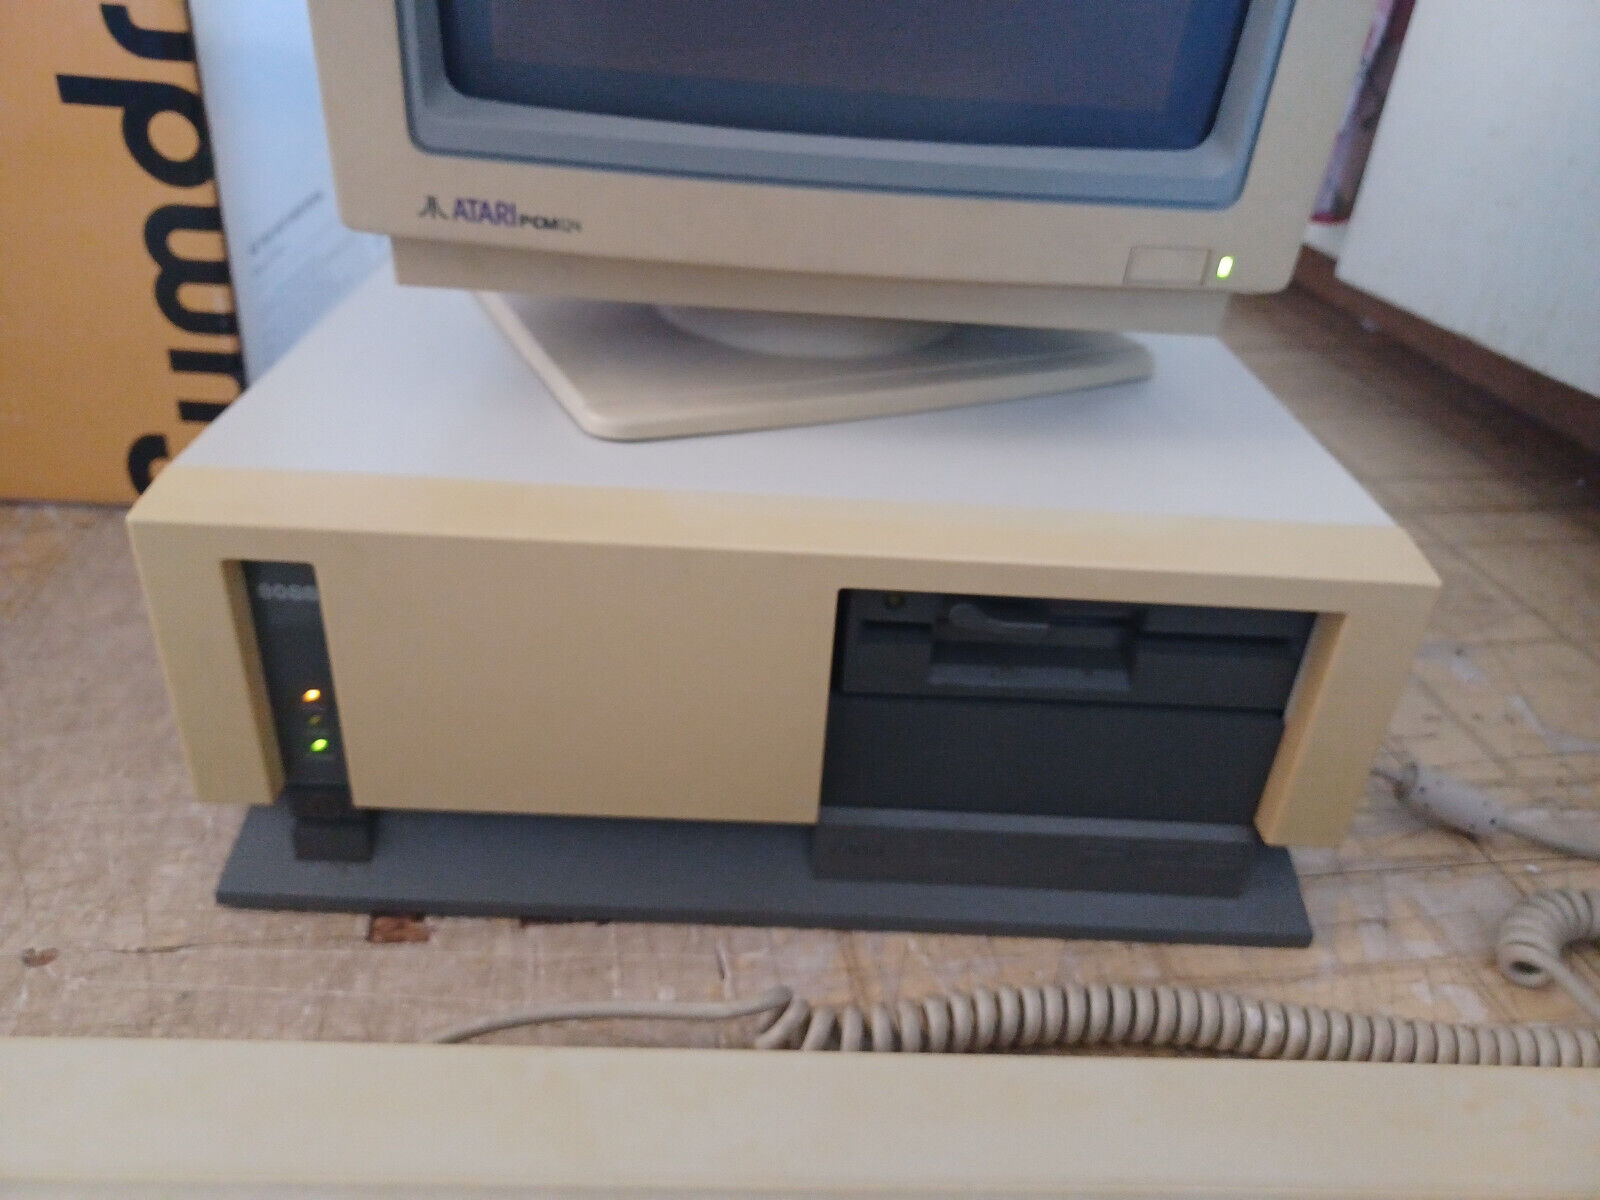 ULTRA RARE Atari  PC3 - IBM Compatible -  Boots and Computes